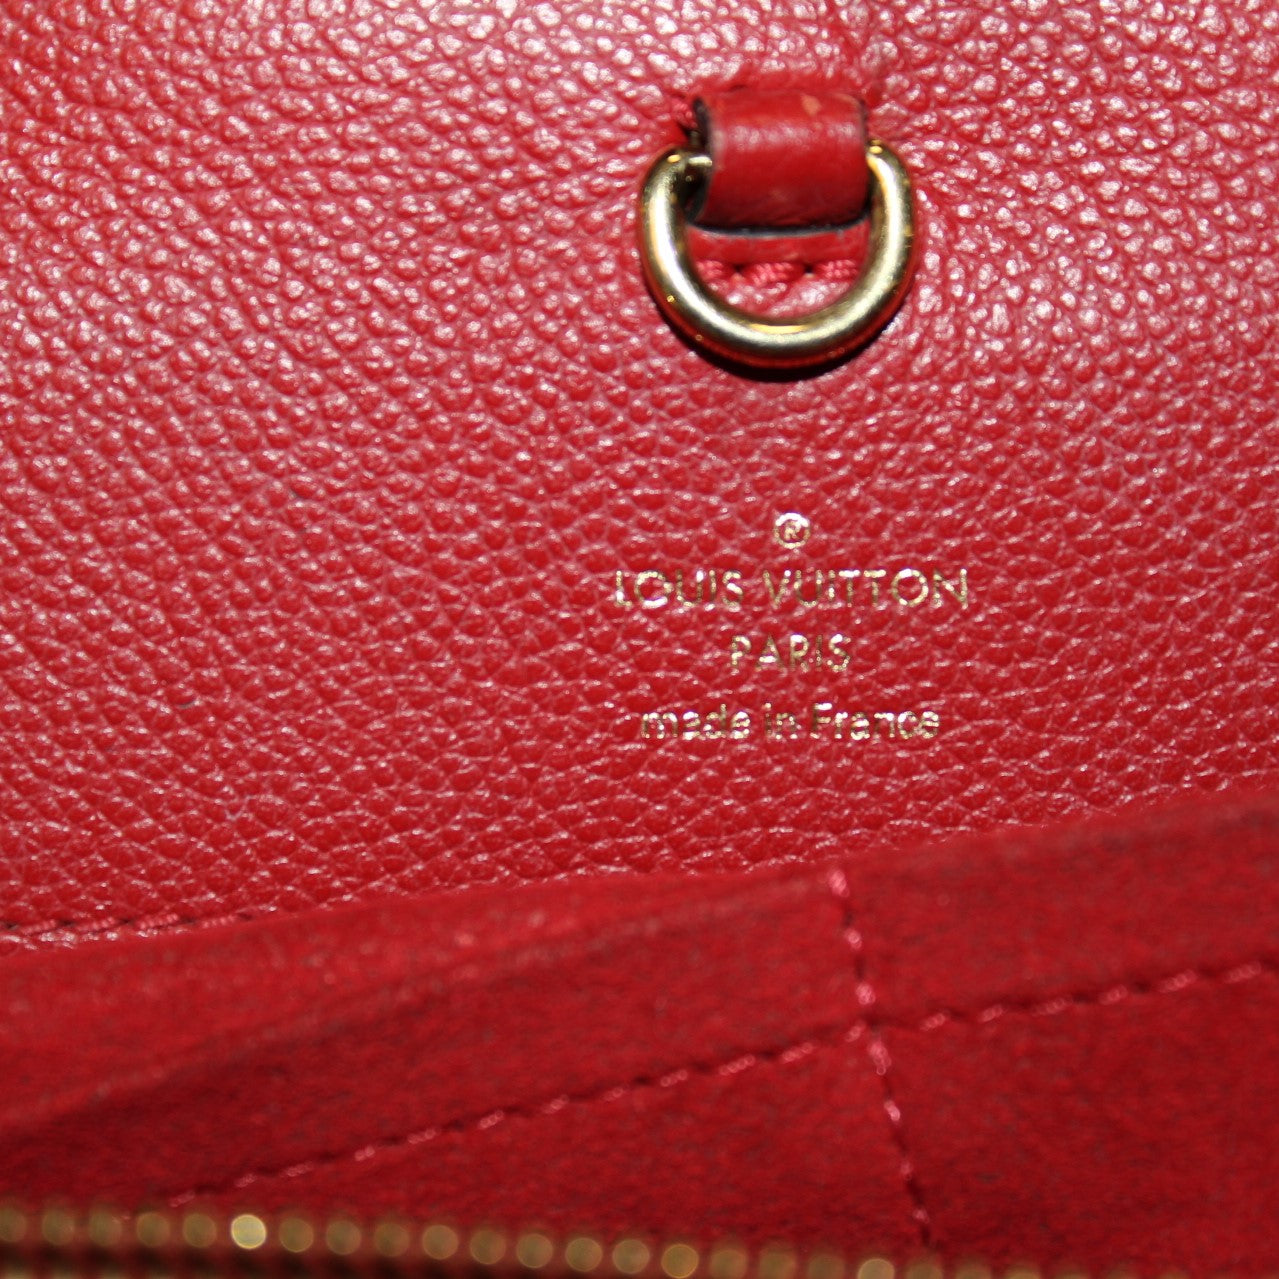 Louis Vuitton Top Handle Venus Monogram Cerise Cherry in Toile